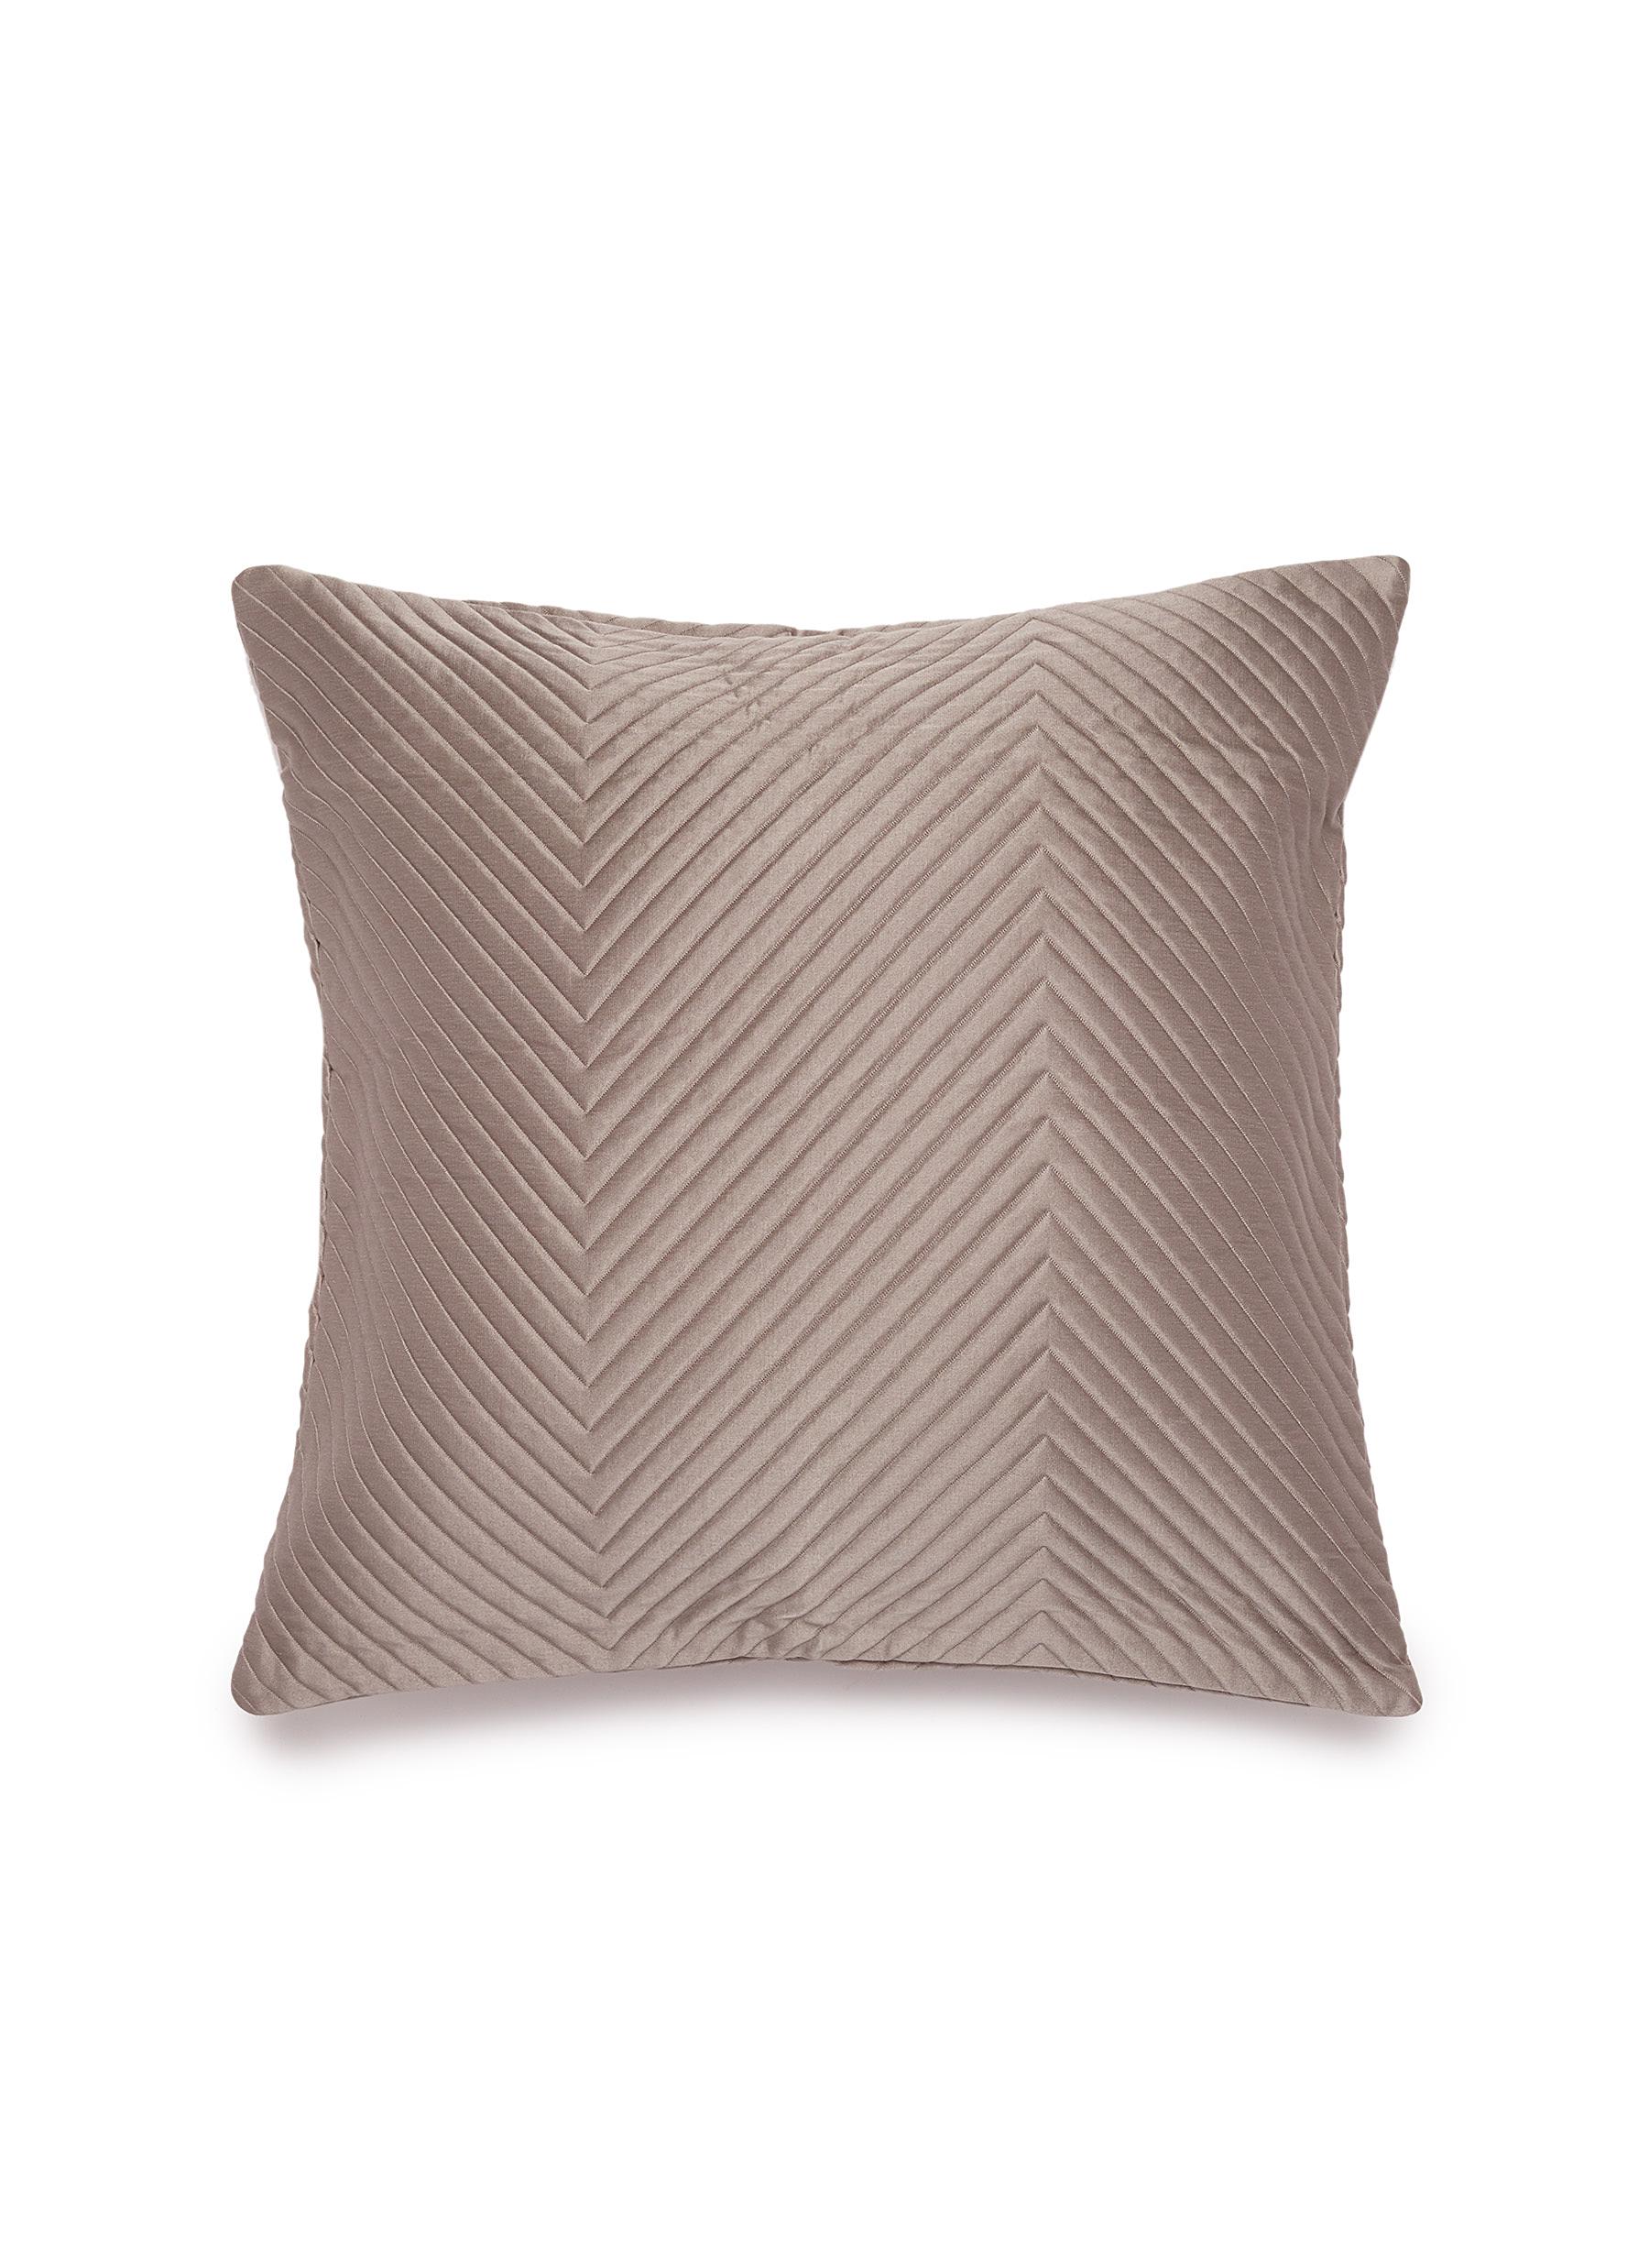 Herringbone cushion cover - Slate Grey